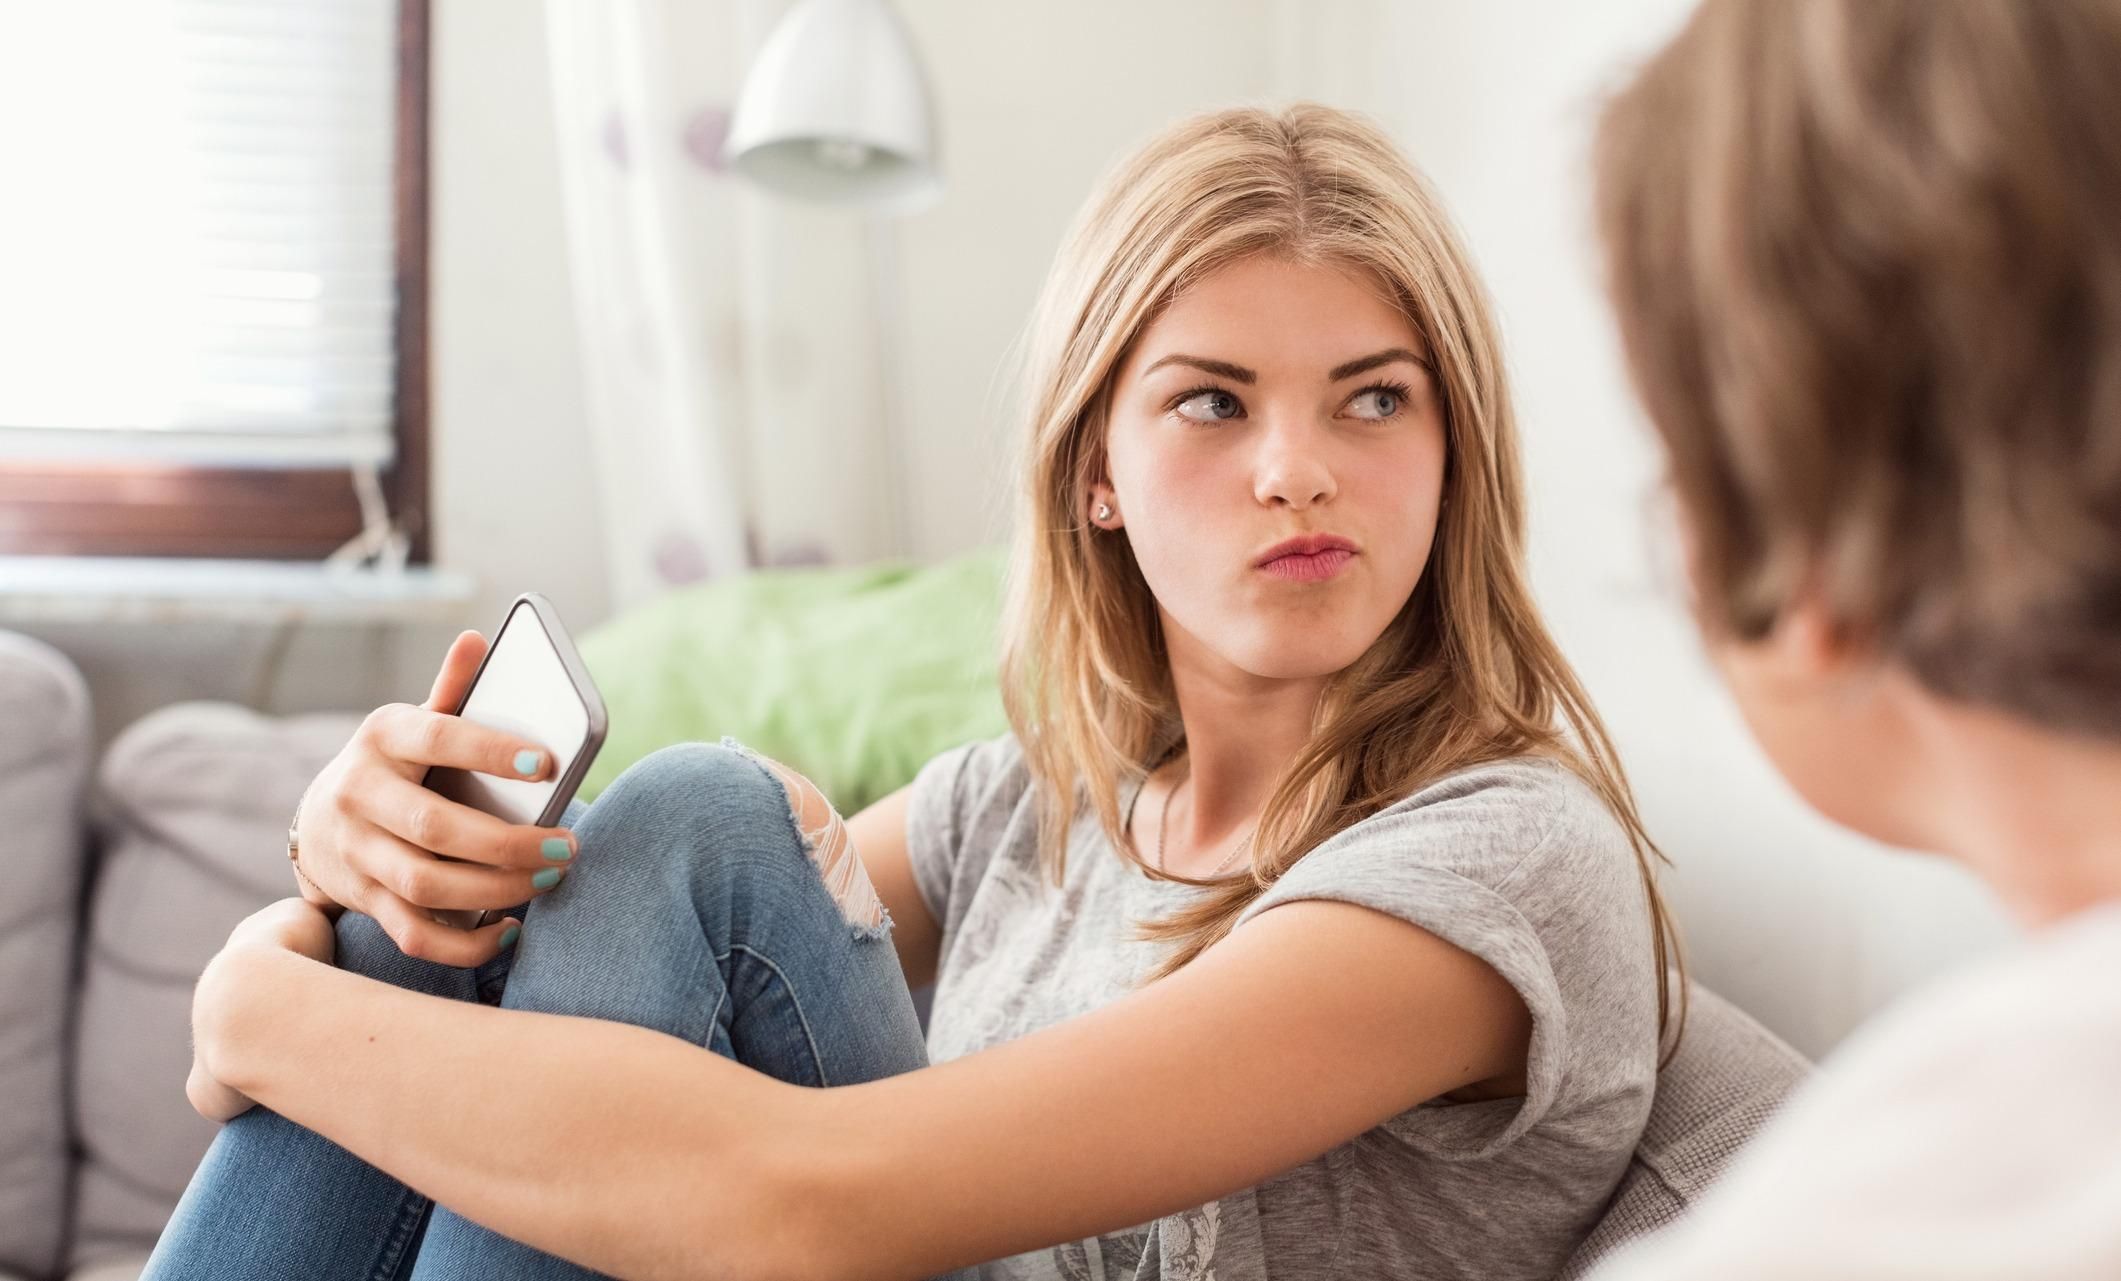 Подростки ненавидят, когда родители публикуют информацию о них в соцсетях: исследование